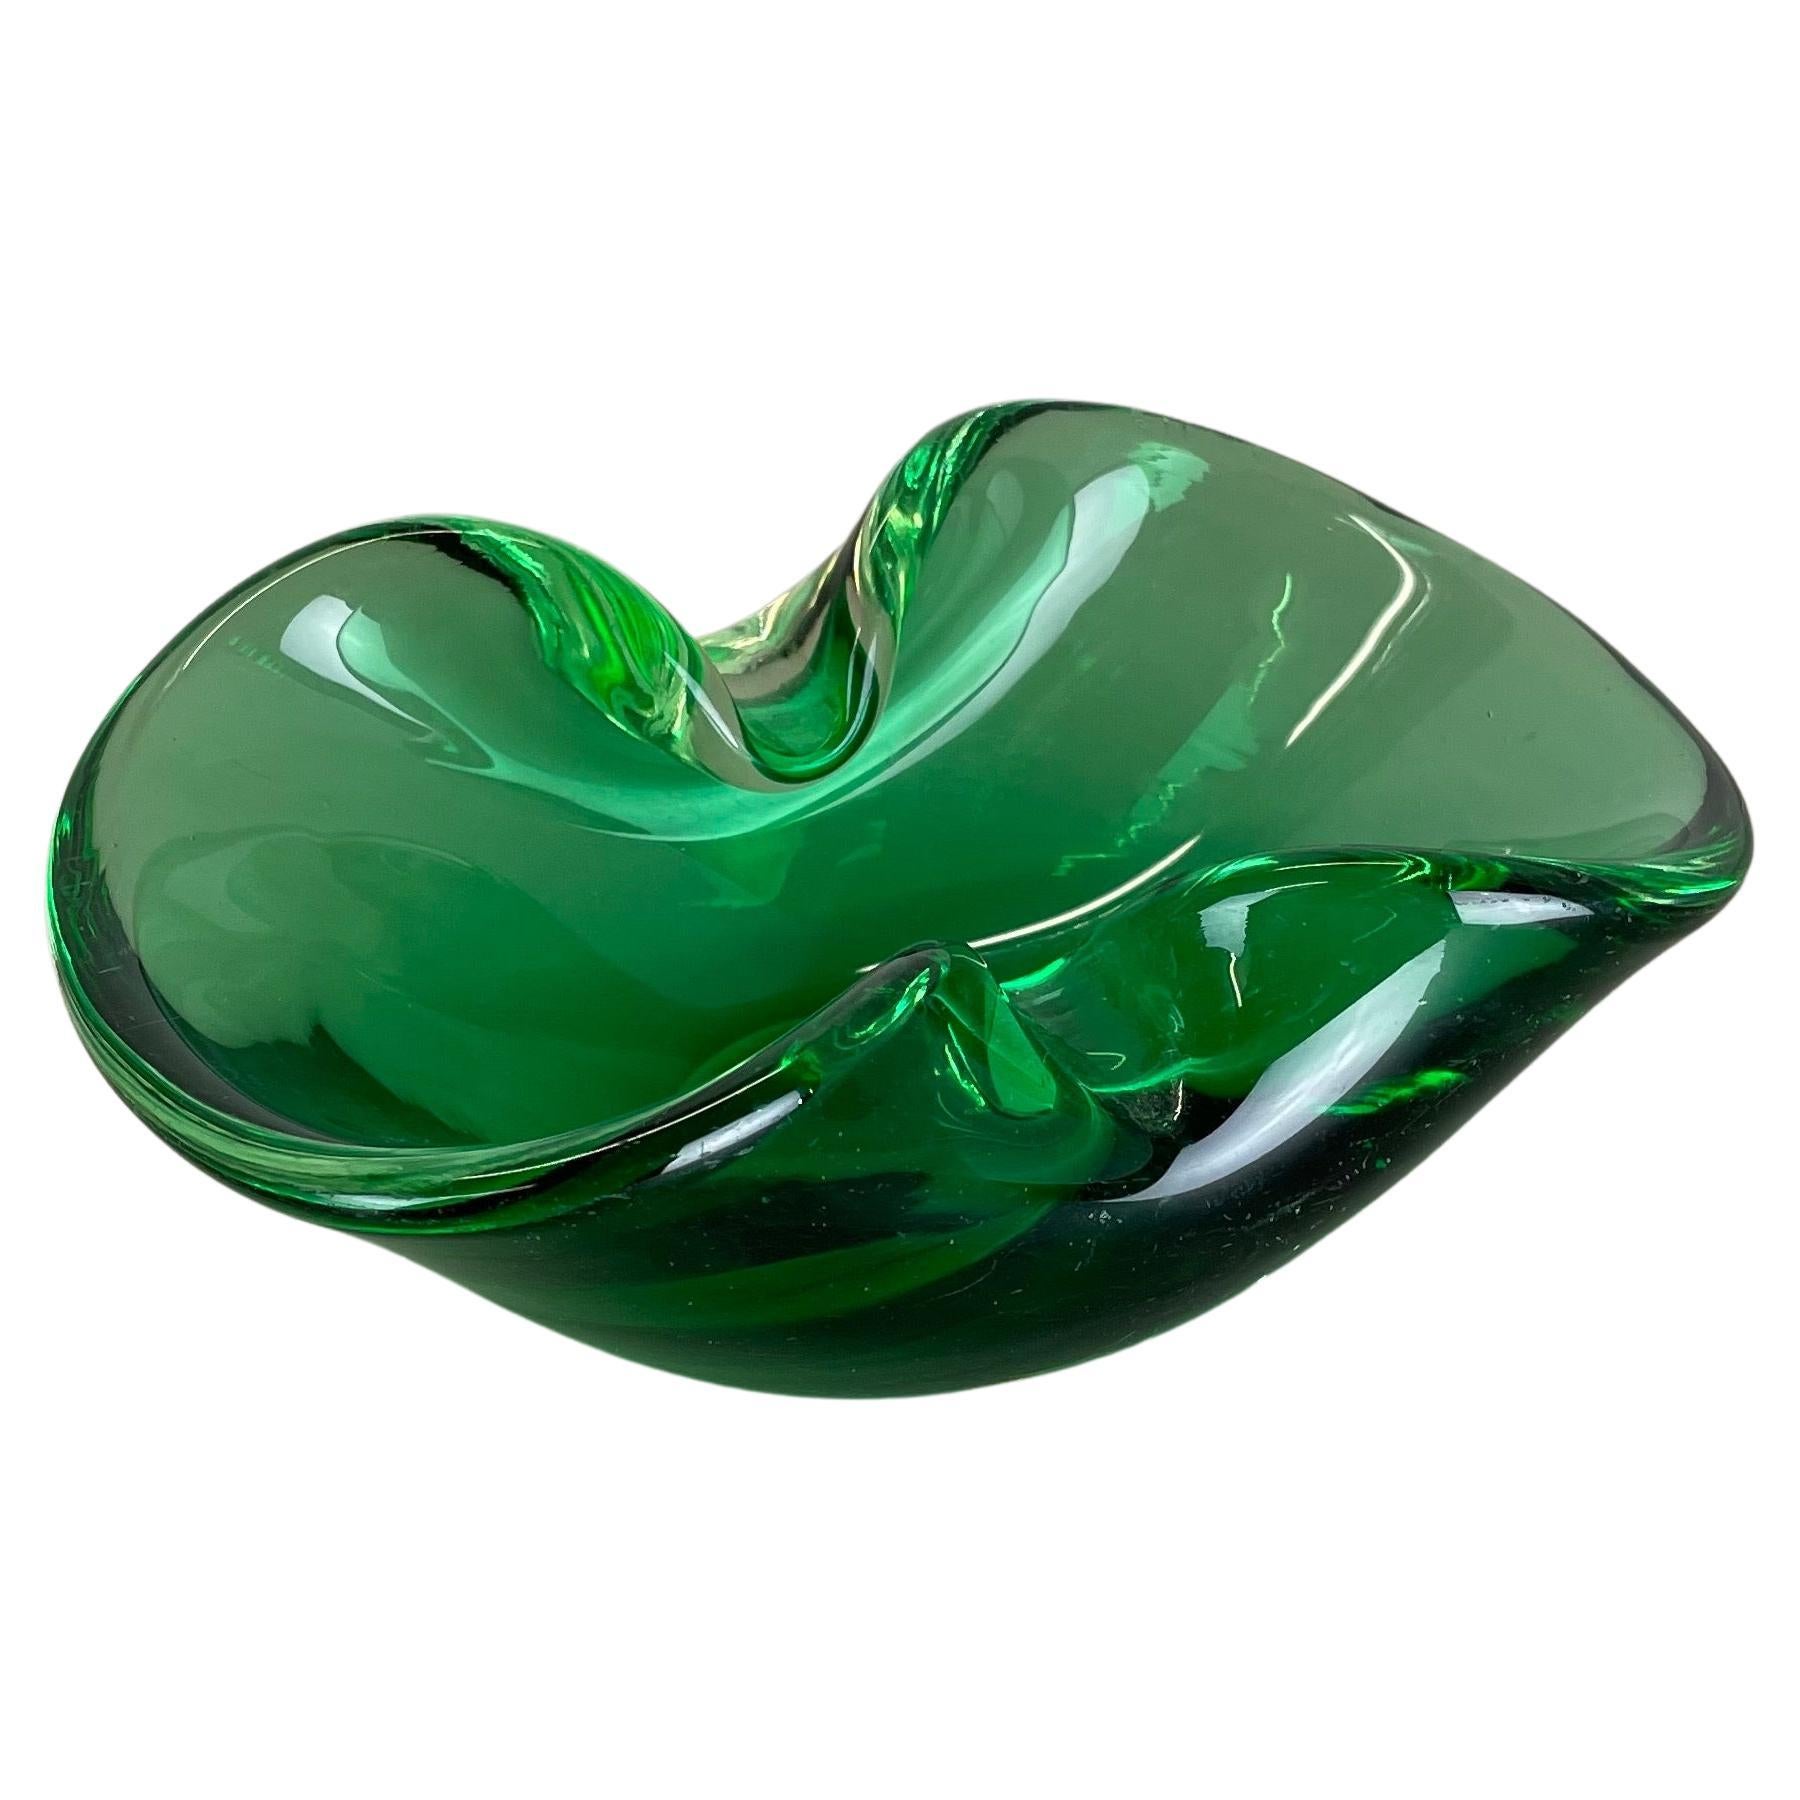 Heavy 1kg Murano Glass "Green" Bowl Element Shell Ashtray Murano, Italy, 1970s